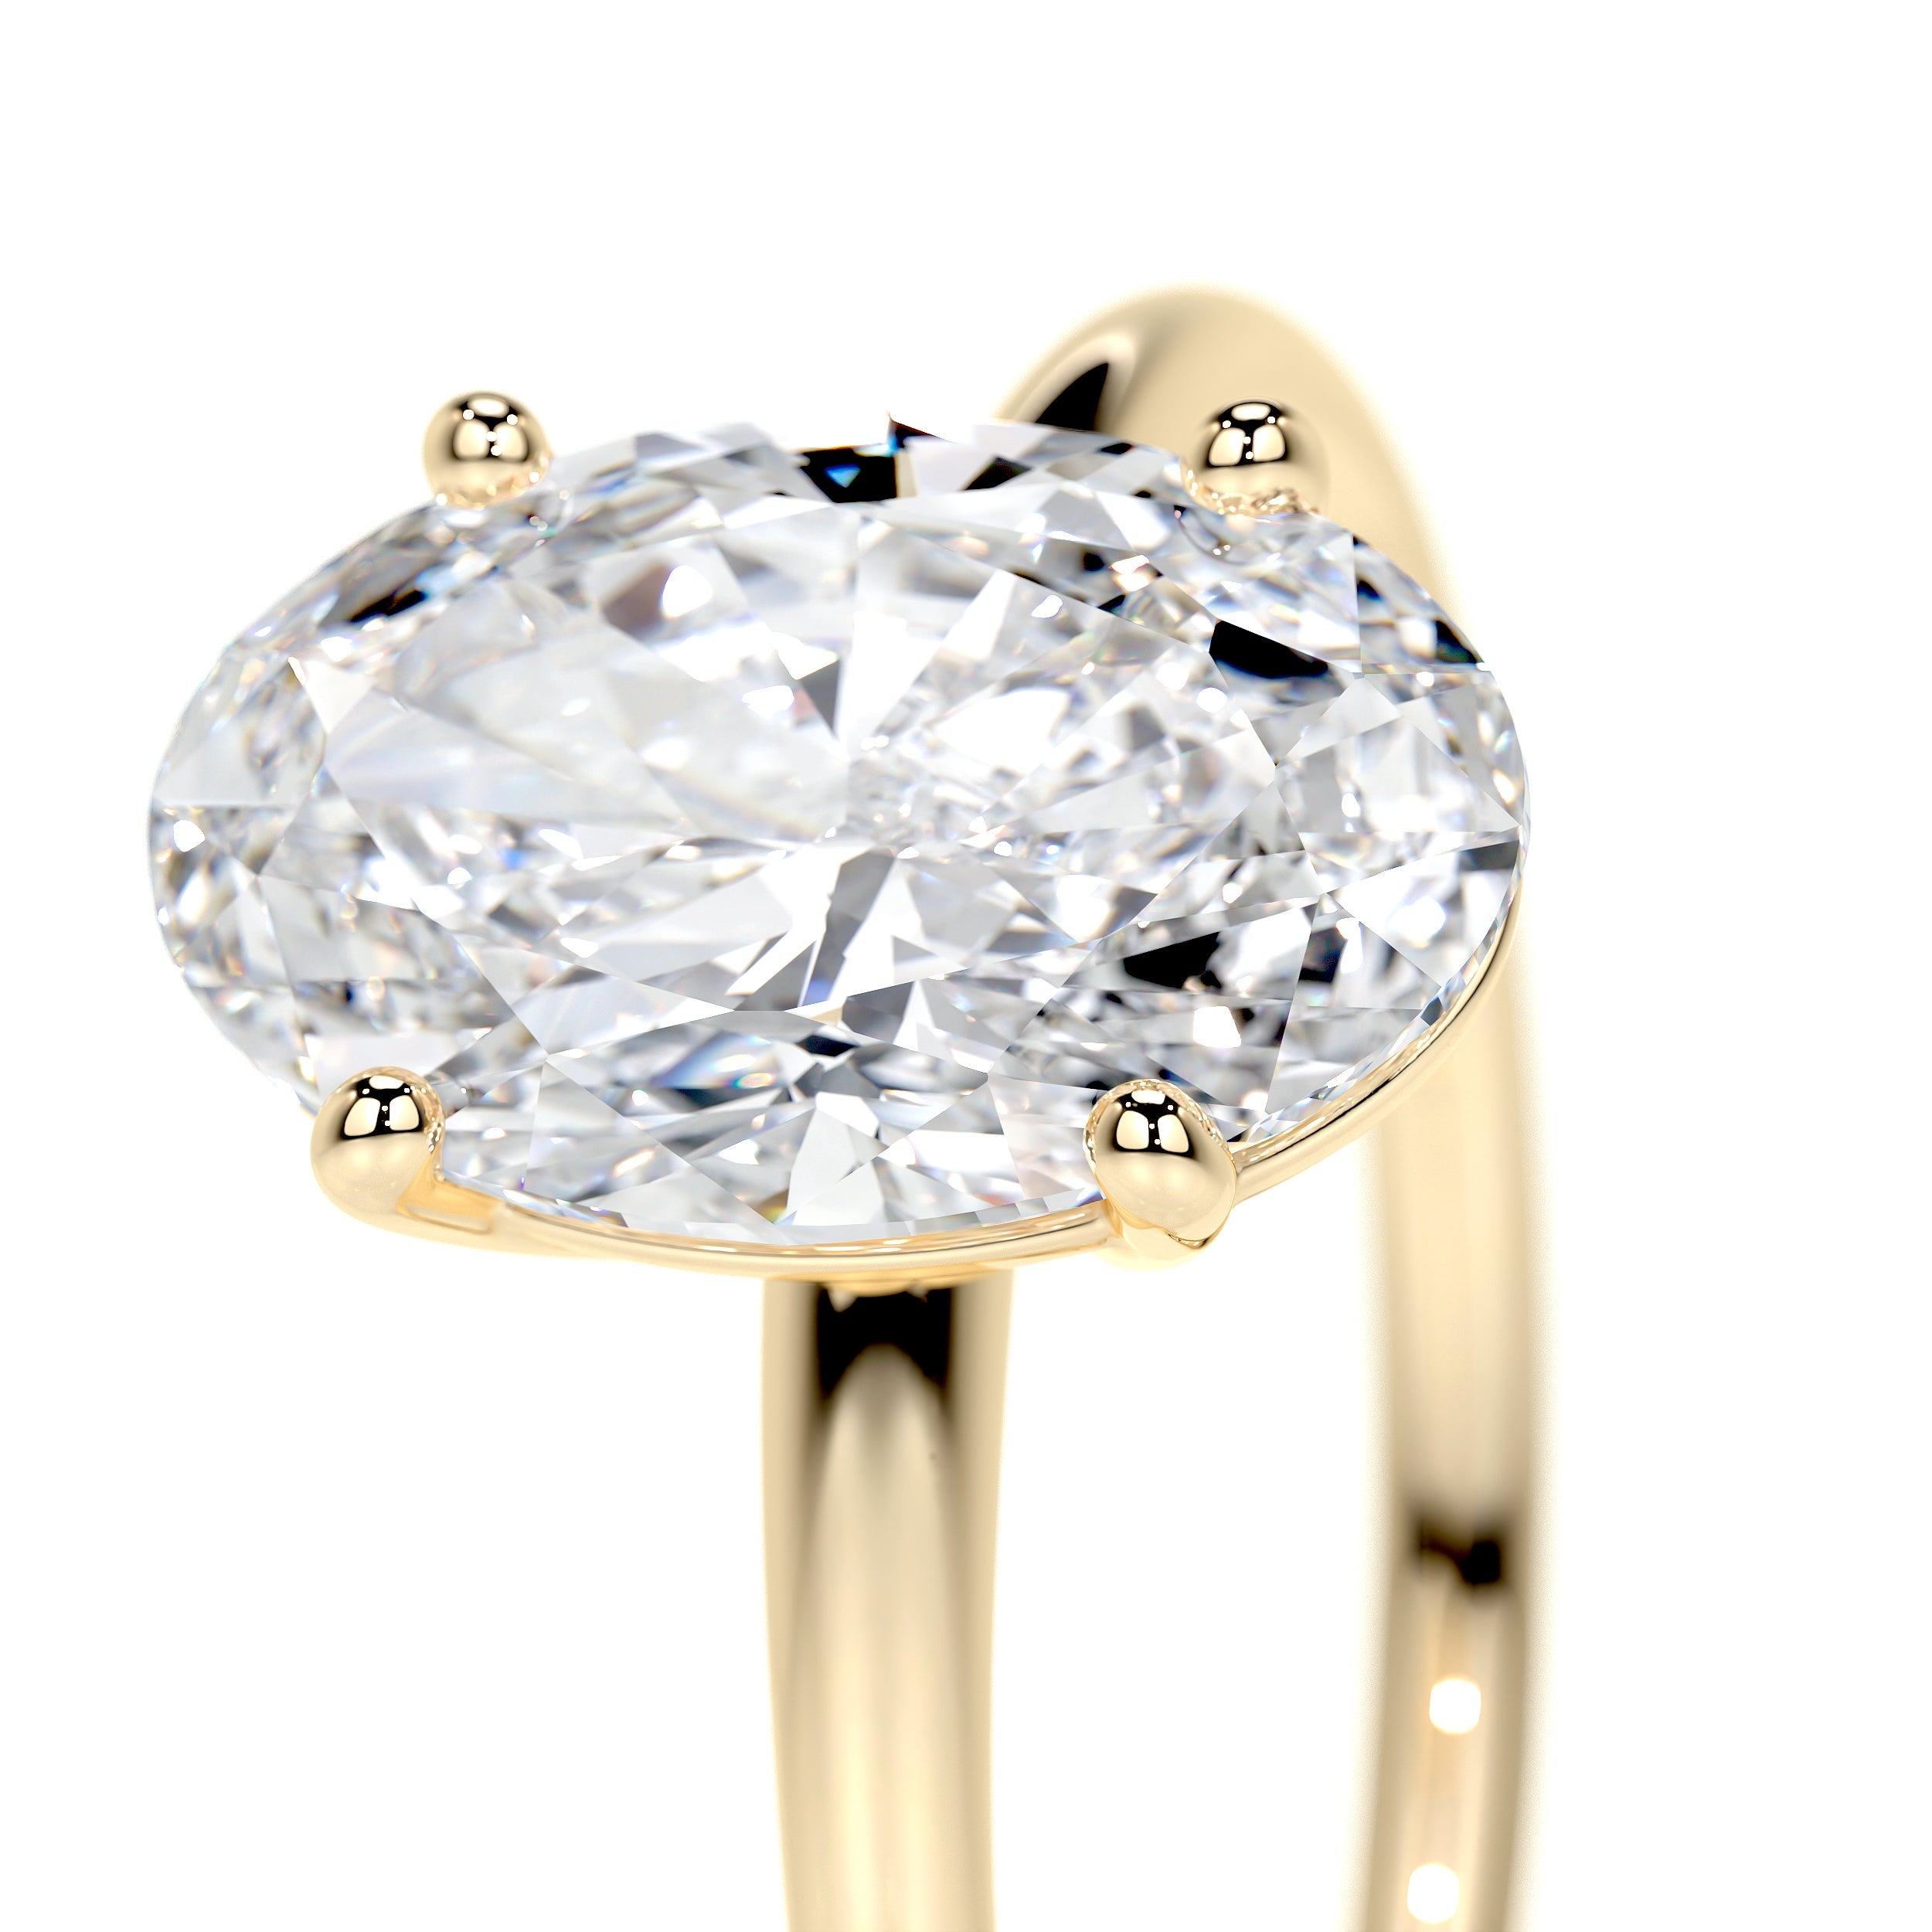 Adaline Lab Grown Diamond Ring   (2 Carat) -18K Yellow Gold (RTS)